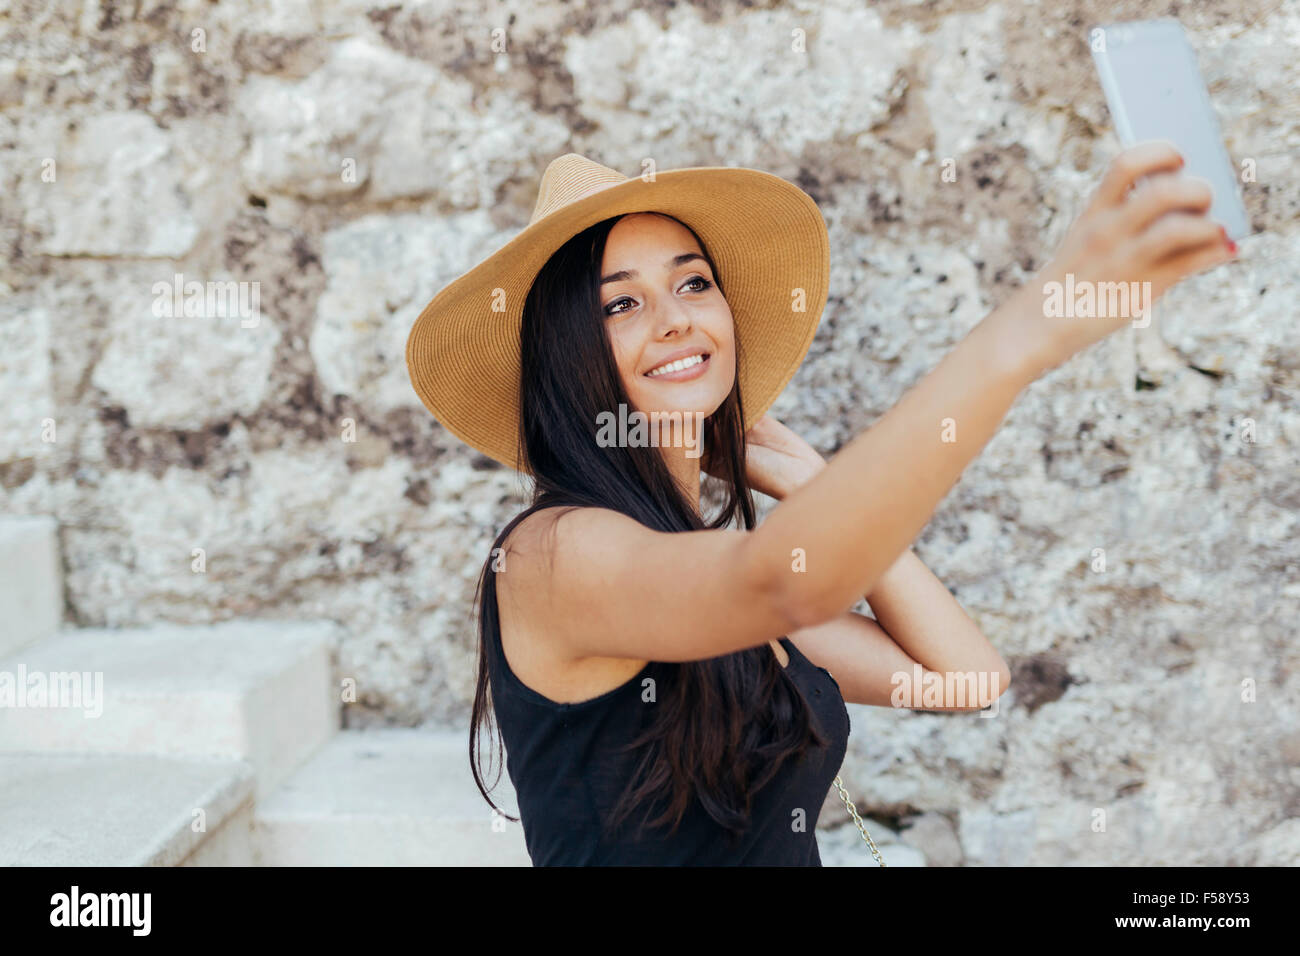 Jolie jeune fille prenant tout en selfies wearing hat Banque D'Images